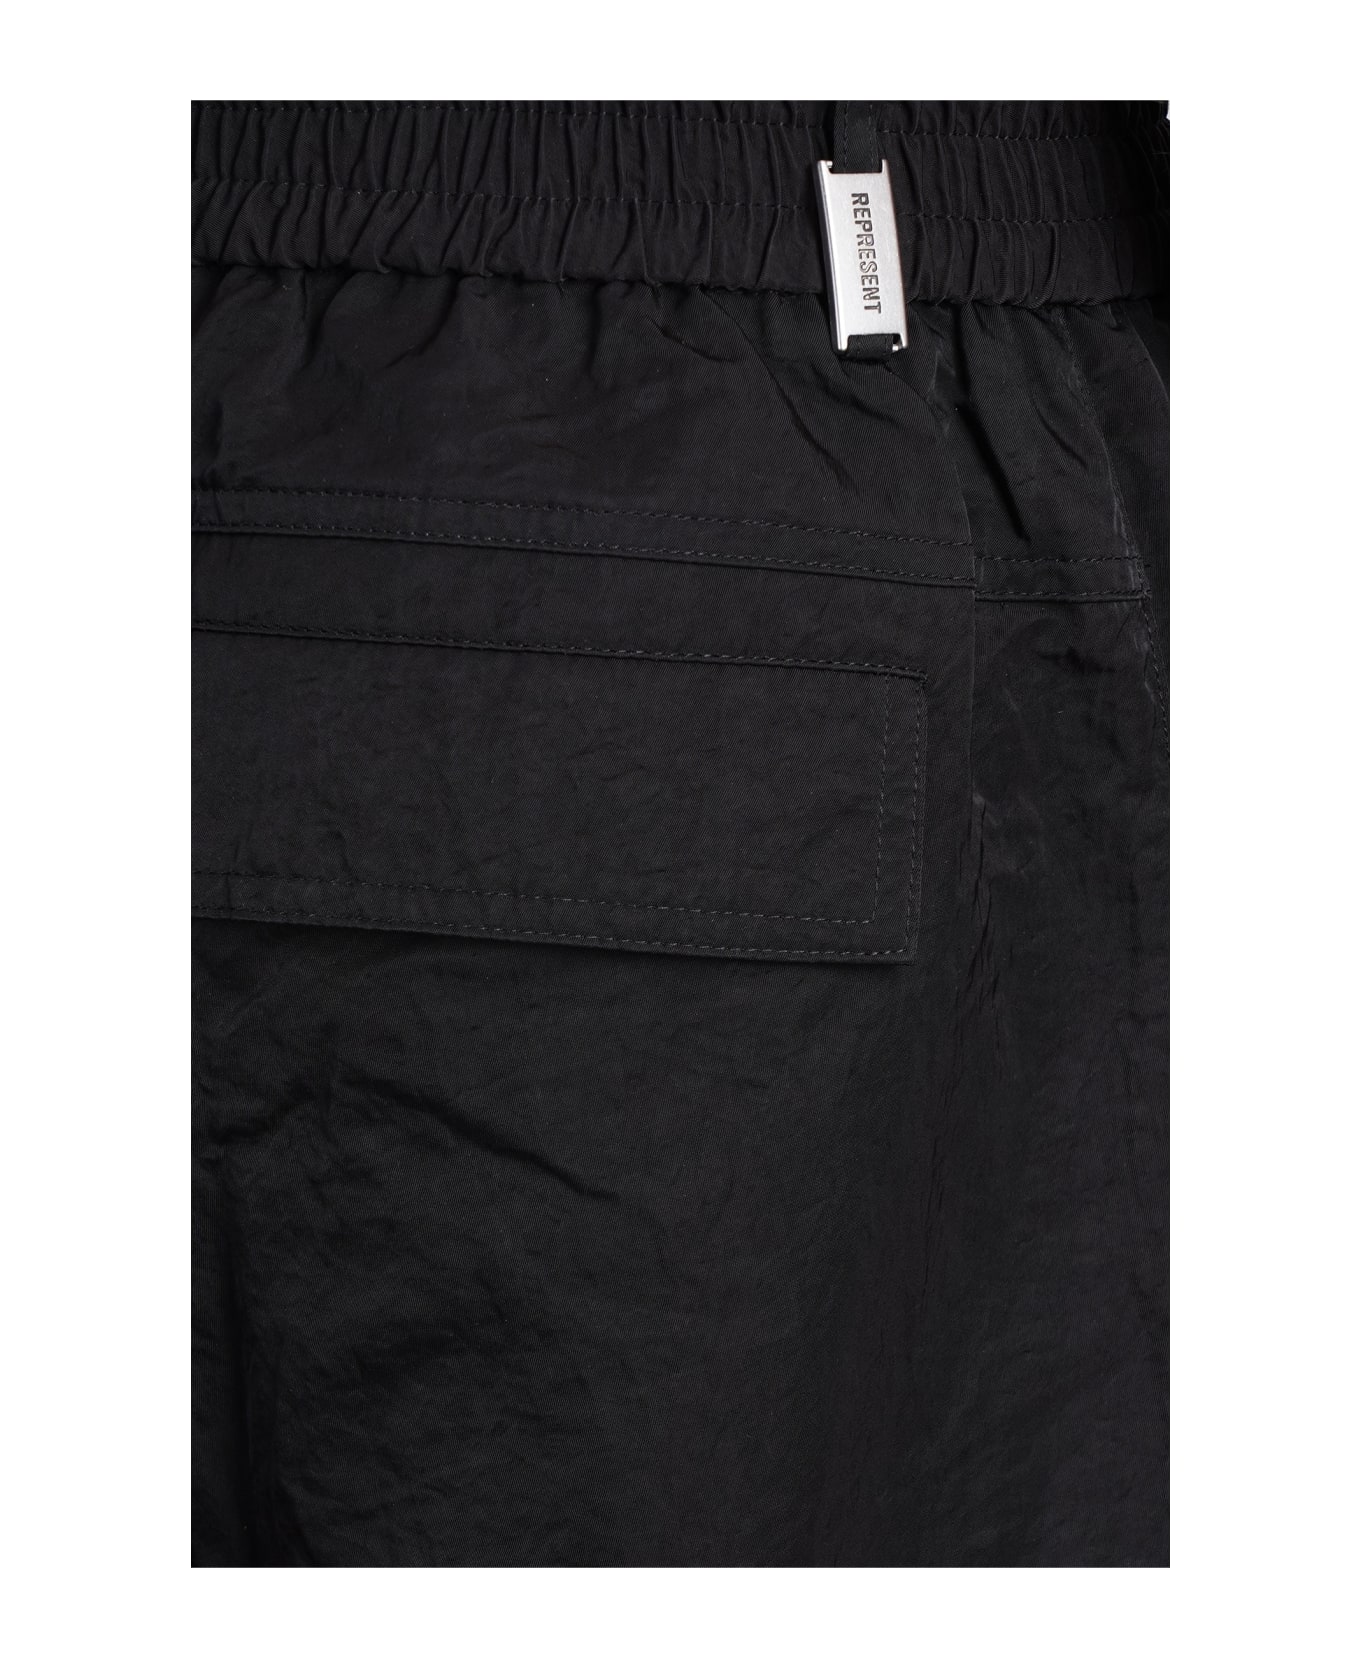 REPRESENT Pants In Black Viscose Pants - BLACK ボトムス